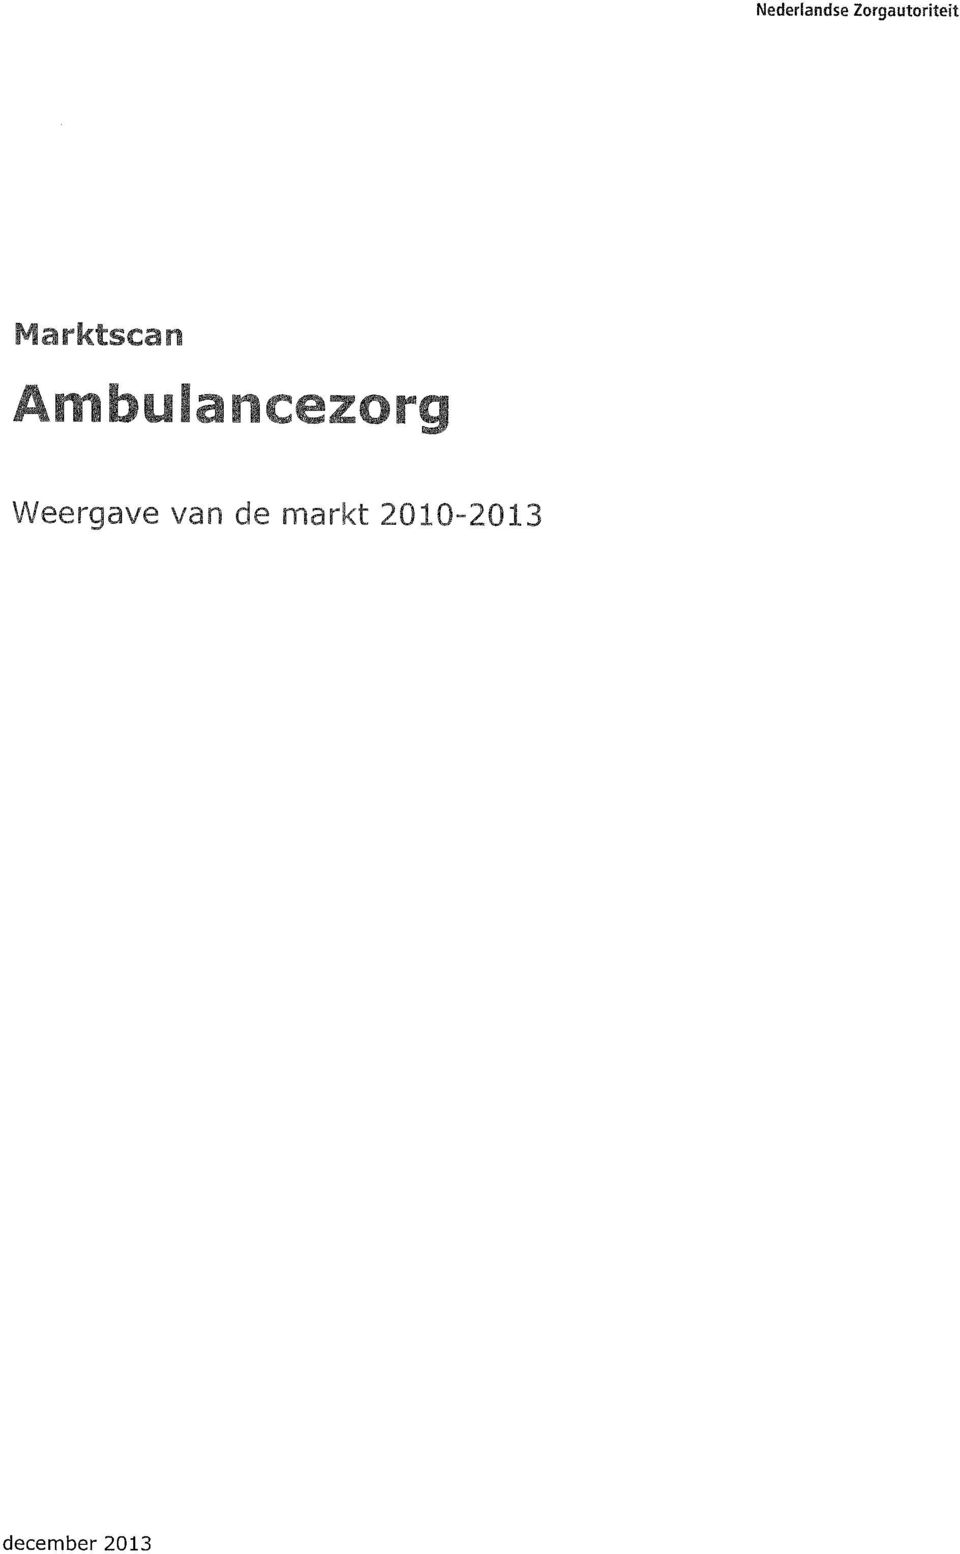 Marktscan Ambulancezorg